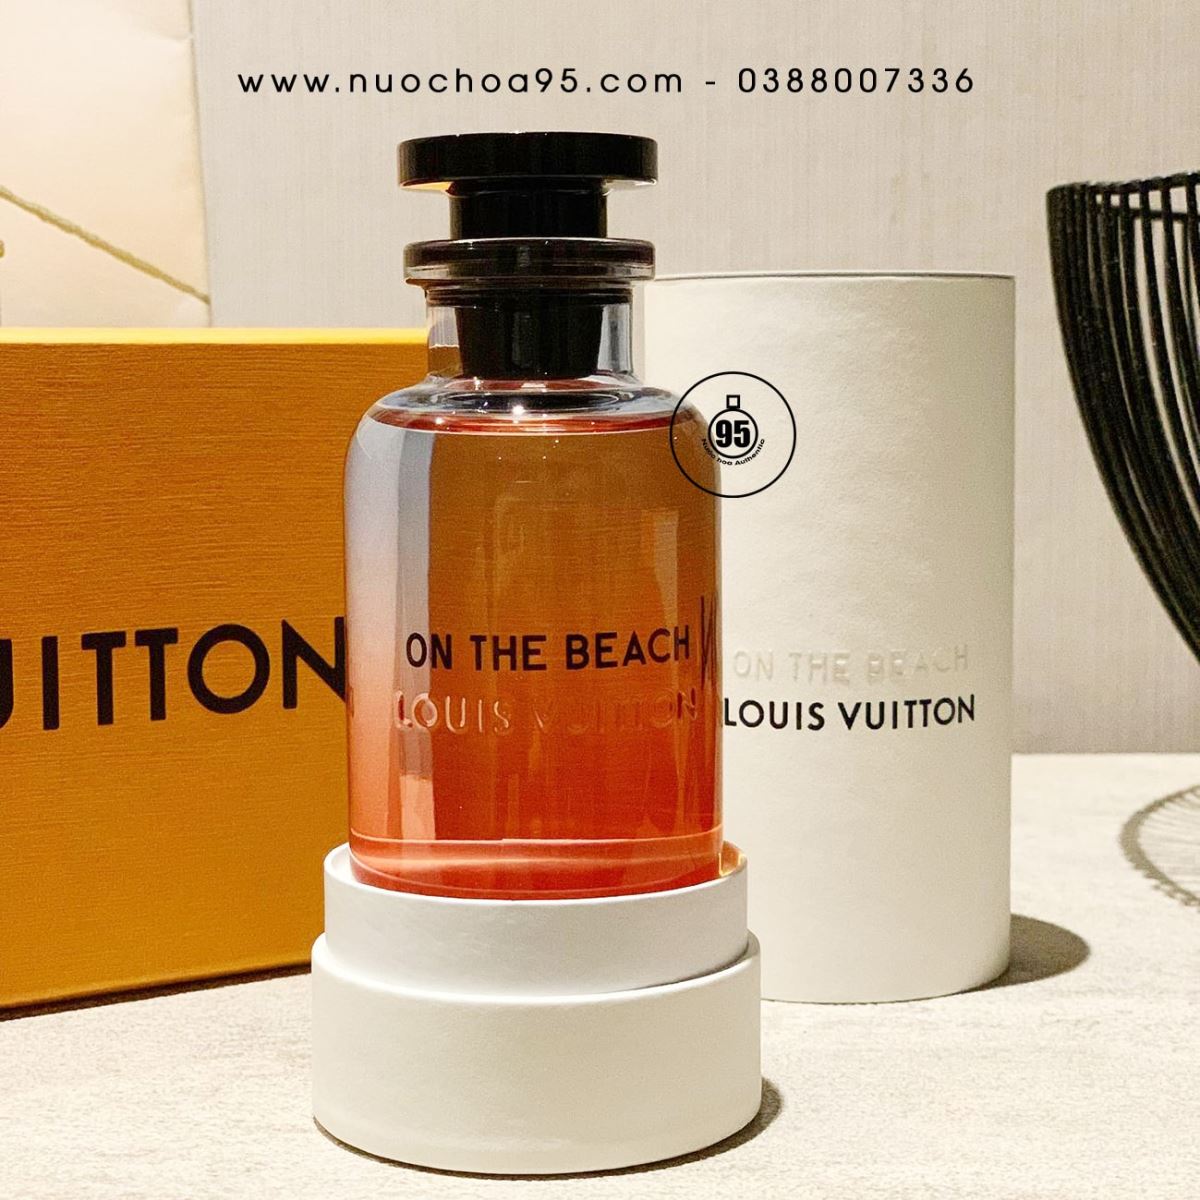 Nước hoa Louis Vuitton On The Beach - Ảnh 3